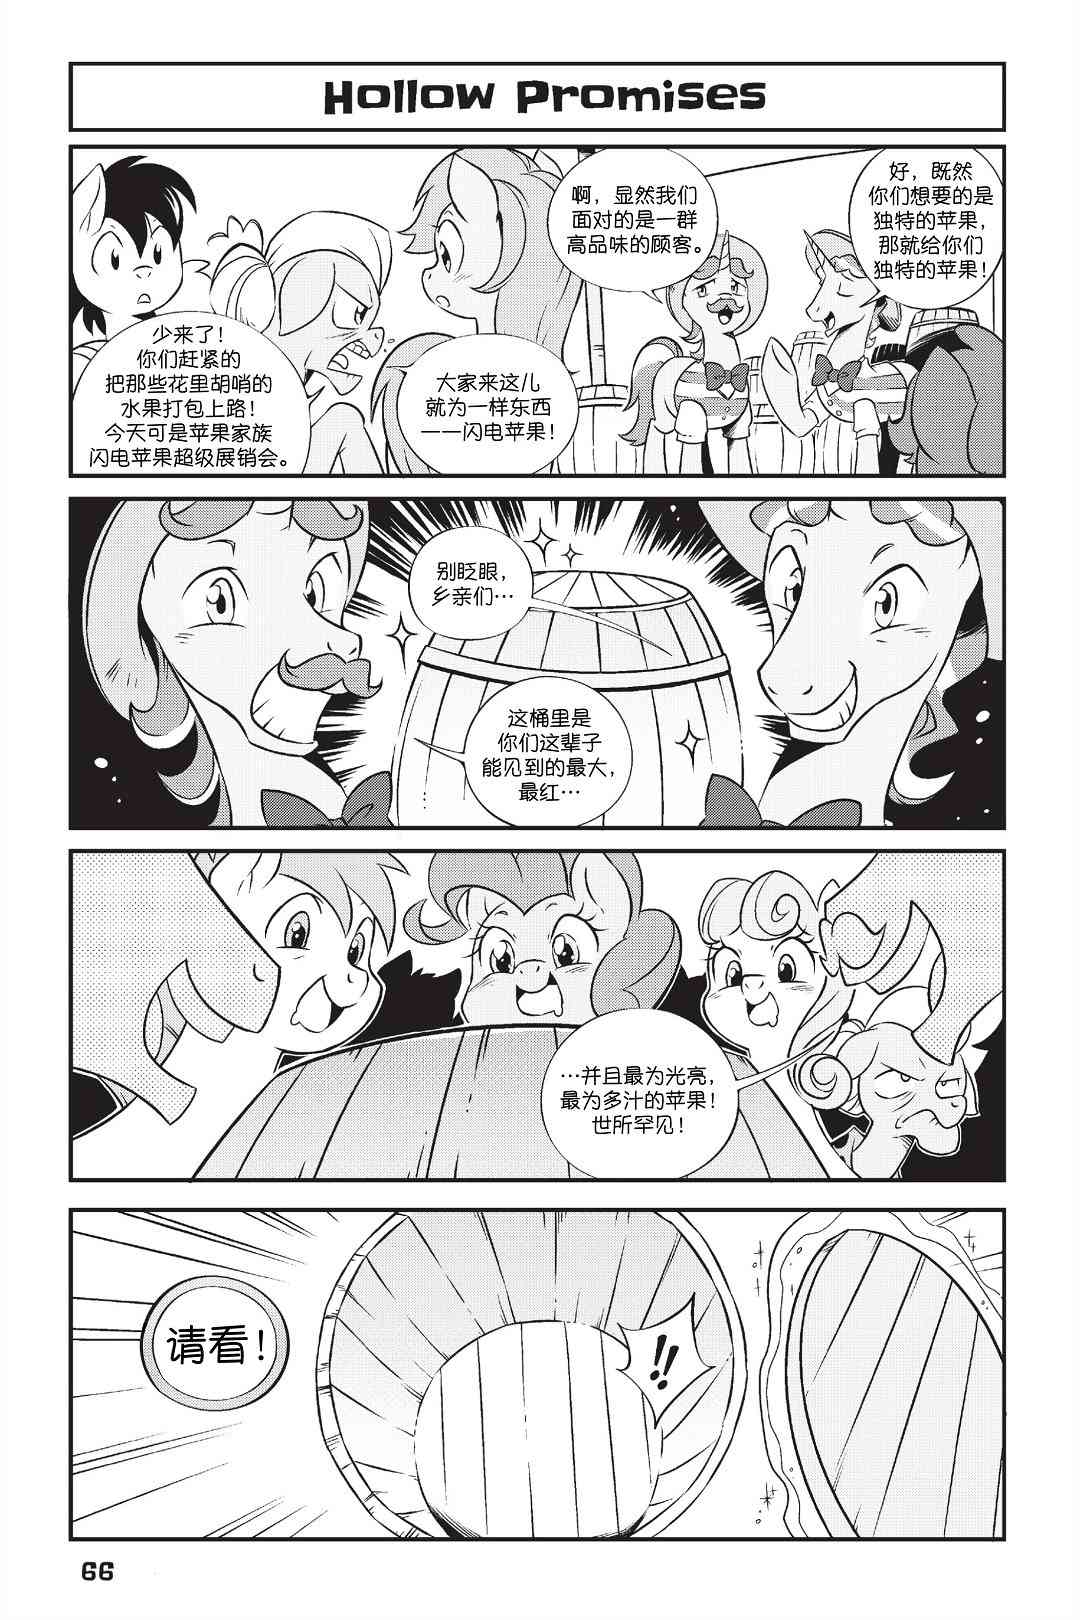 彩虹小馬G4：友情就是魔法 - 新日版漫畫第01部第05話 - 2